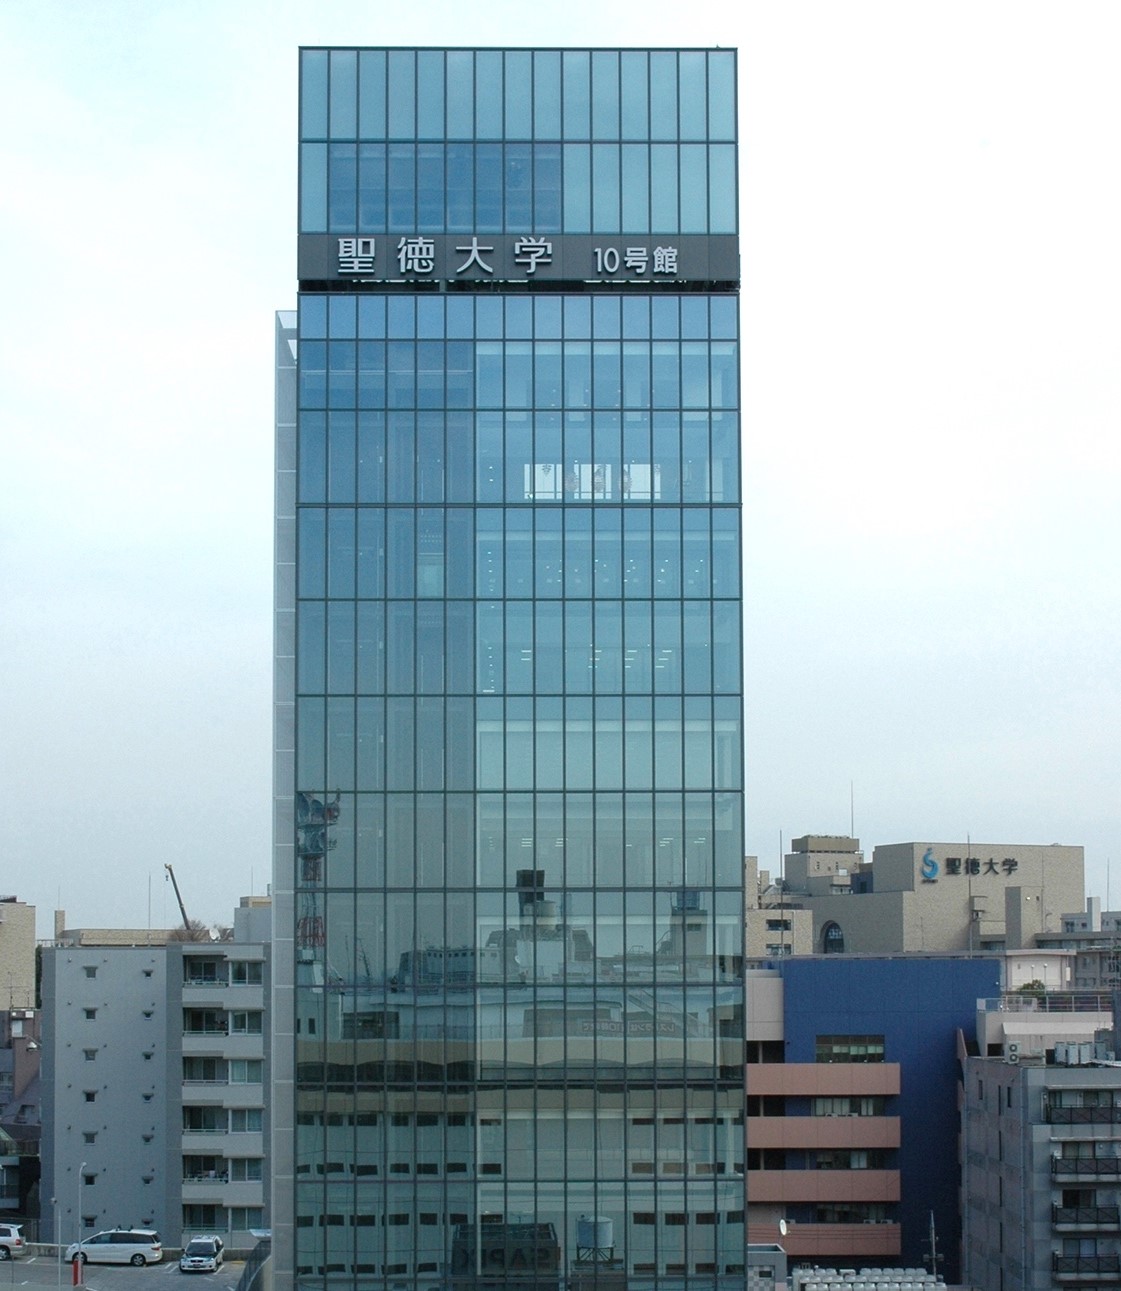 聖徳大学10号館は松戸駅から徒歩1分です。